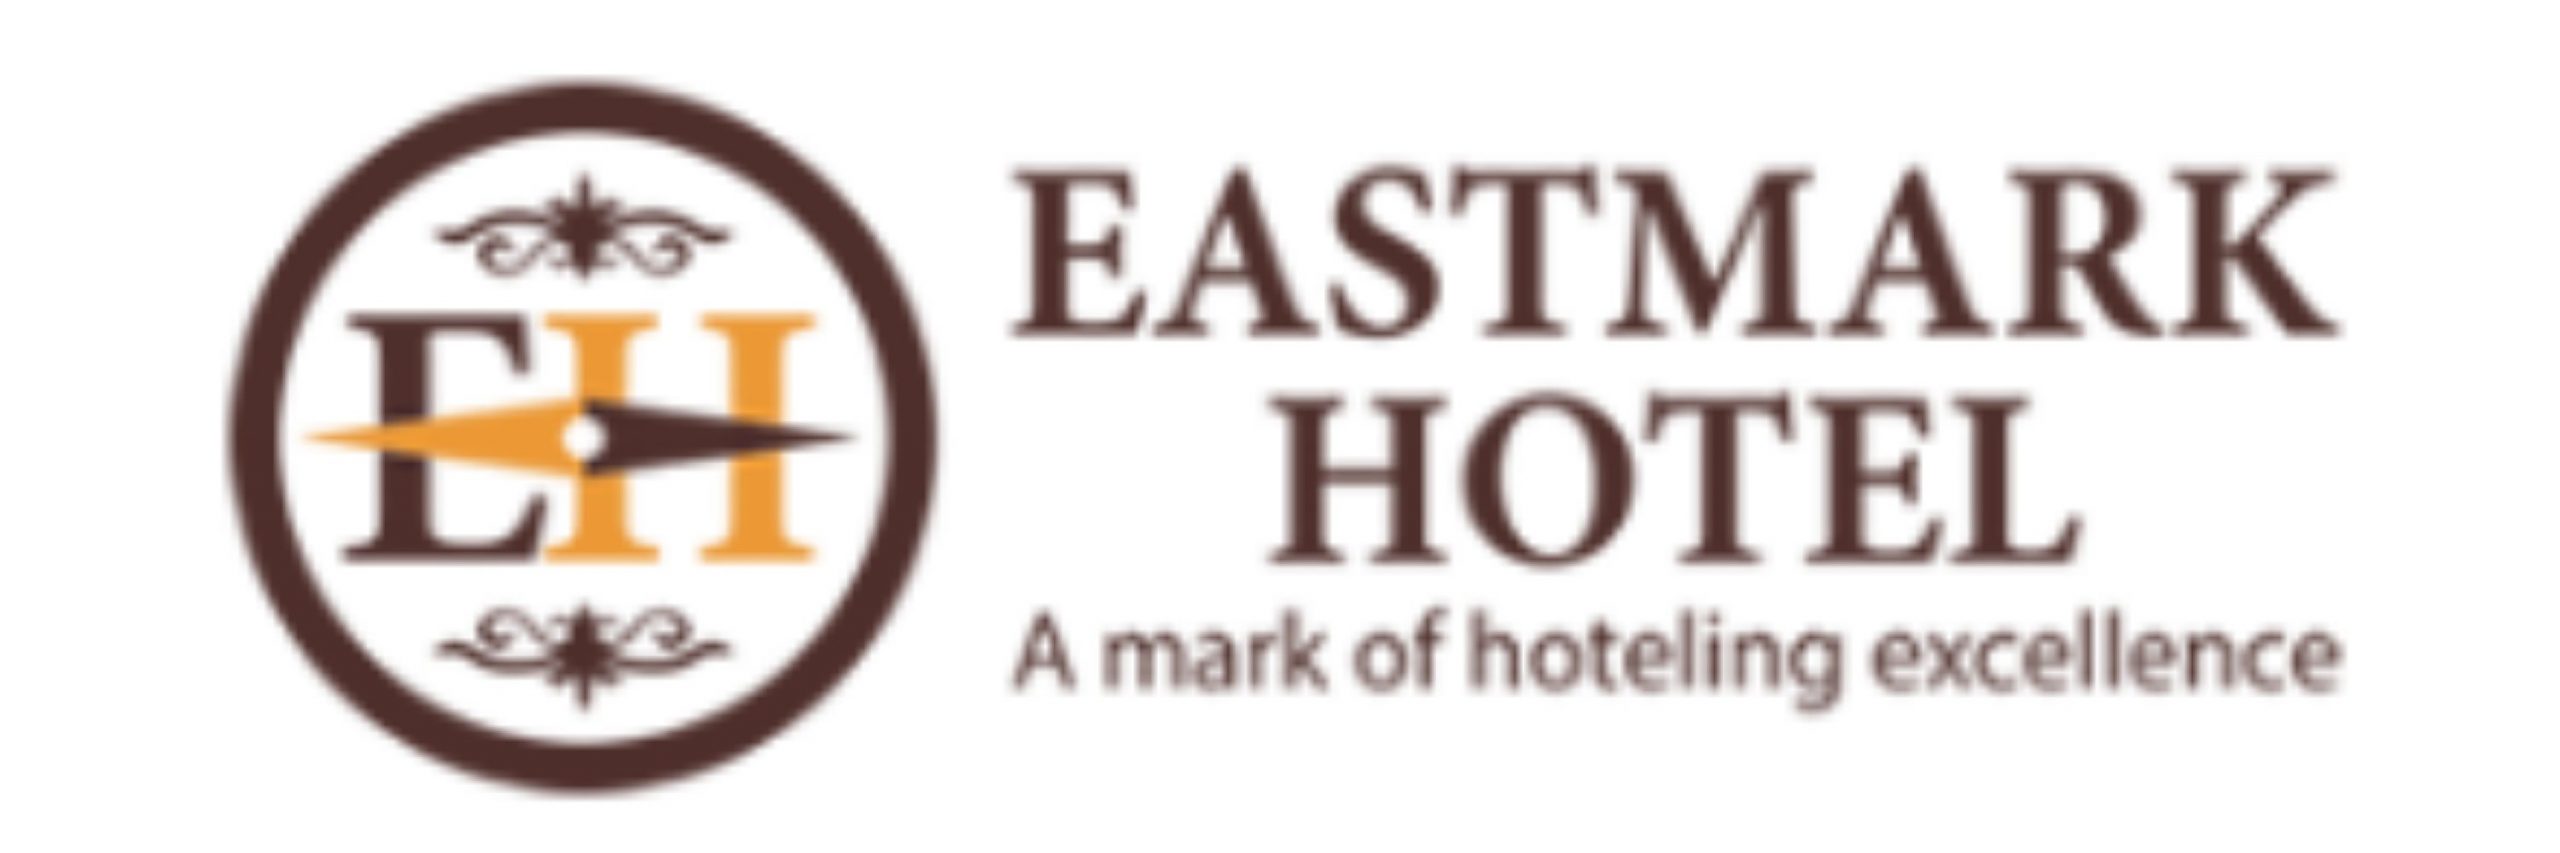 Eastmark Hotel |   Gallery